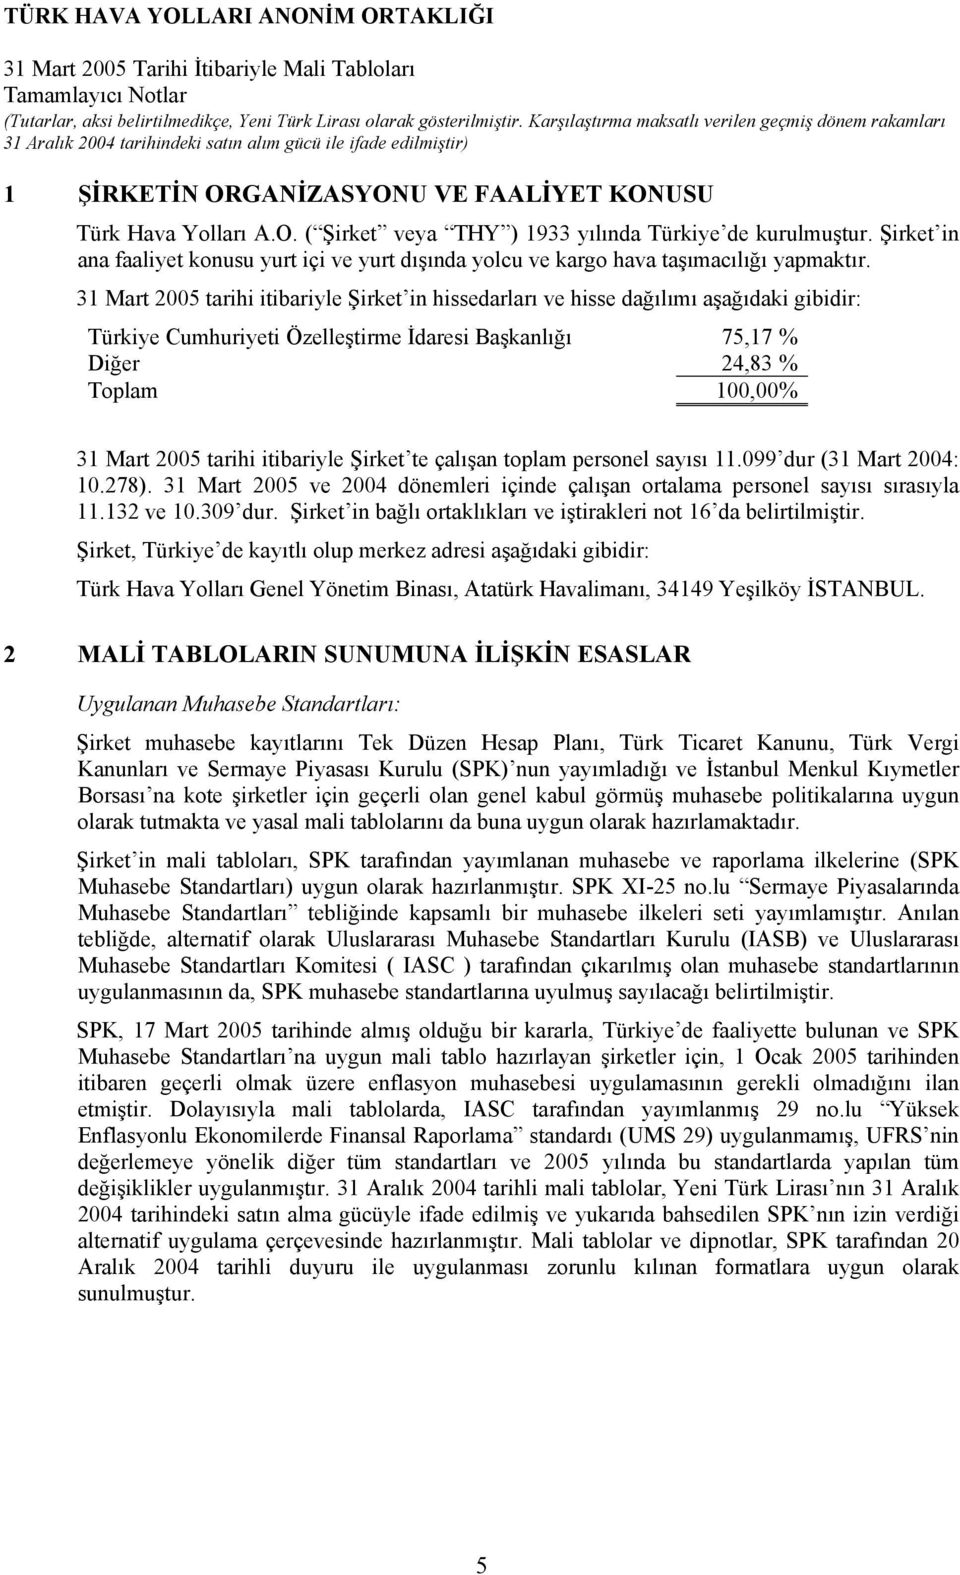 31 Mart 2005 tarihi itibariyle Şirket in hissedarları ve hisse dağılımı aşağıdaki gibidir: Türkiye Cumhuriyeti Özelleştirme İdaresi Başkanlığı 75,17 % Diğer 24,83 % Toplam 100,00% 31 Mart 2005 tarihi